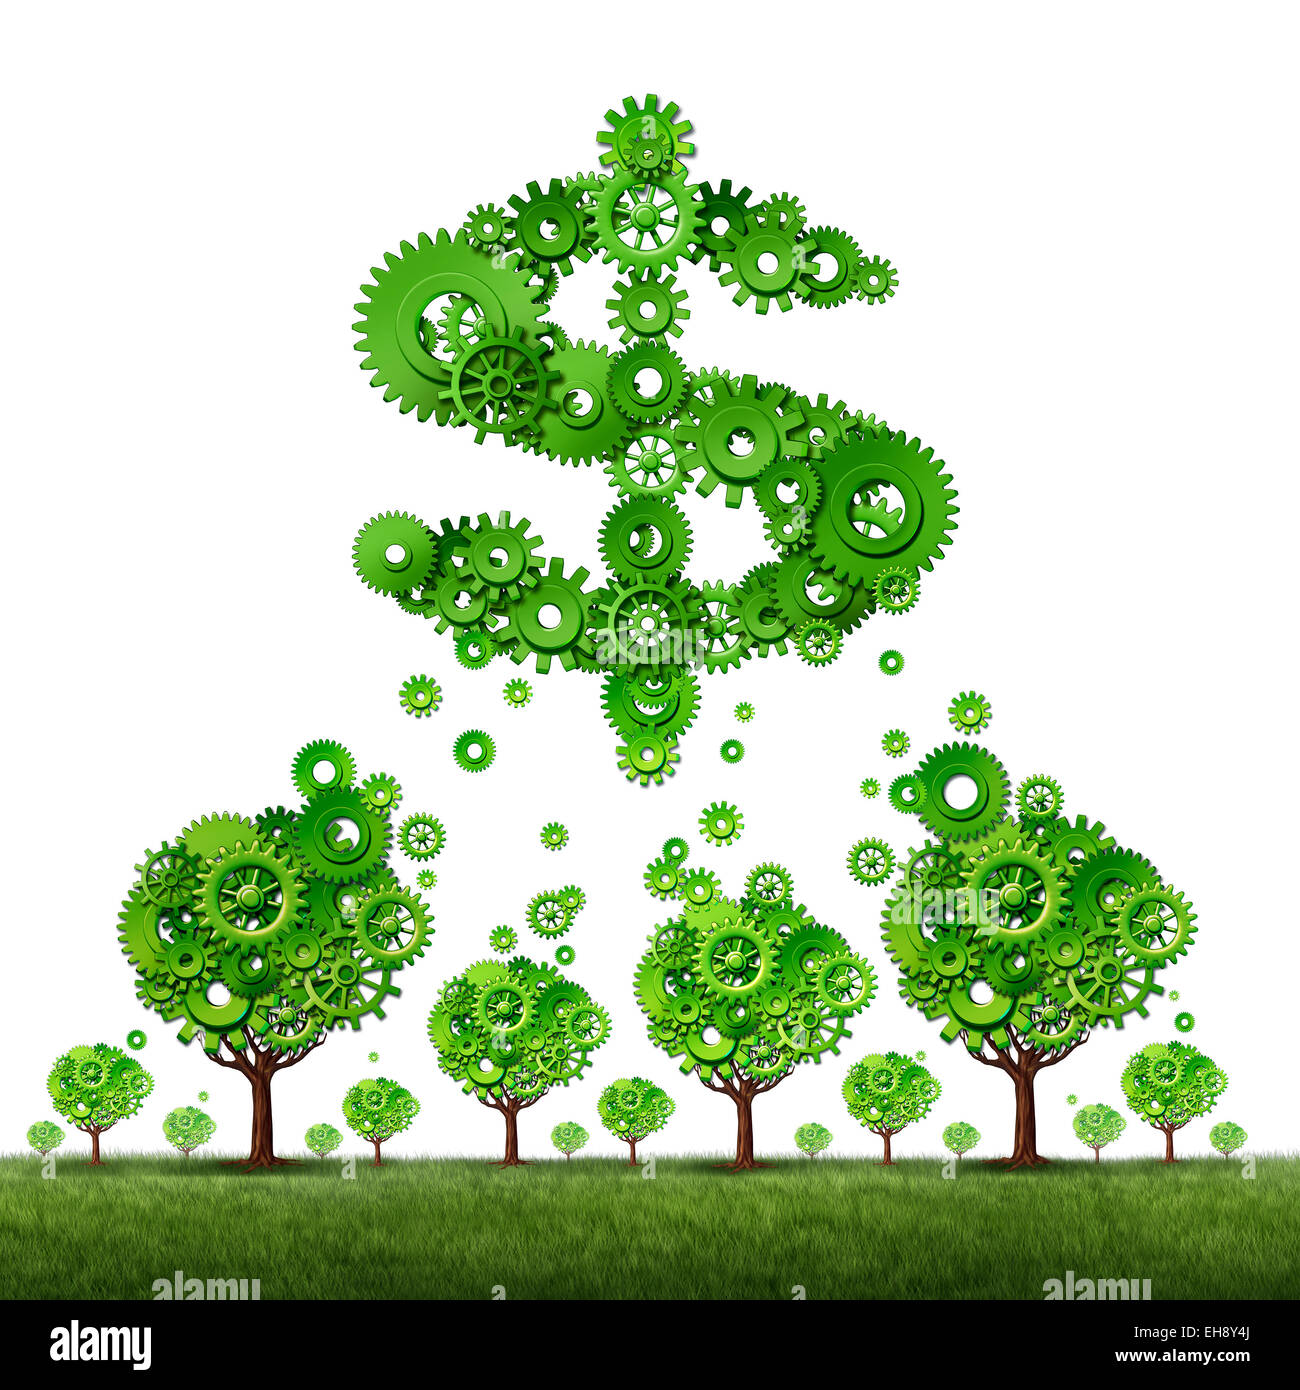 Crowdfunding et concept de revenu d'investissement collectif qu'un groupe d'arbres verts fait des vitesses contribuant à un dollar en forme de symbole avec roue dentée comme une idée de financement public. Banque D'Images